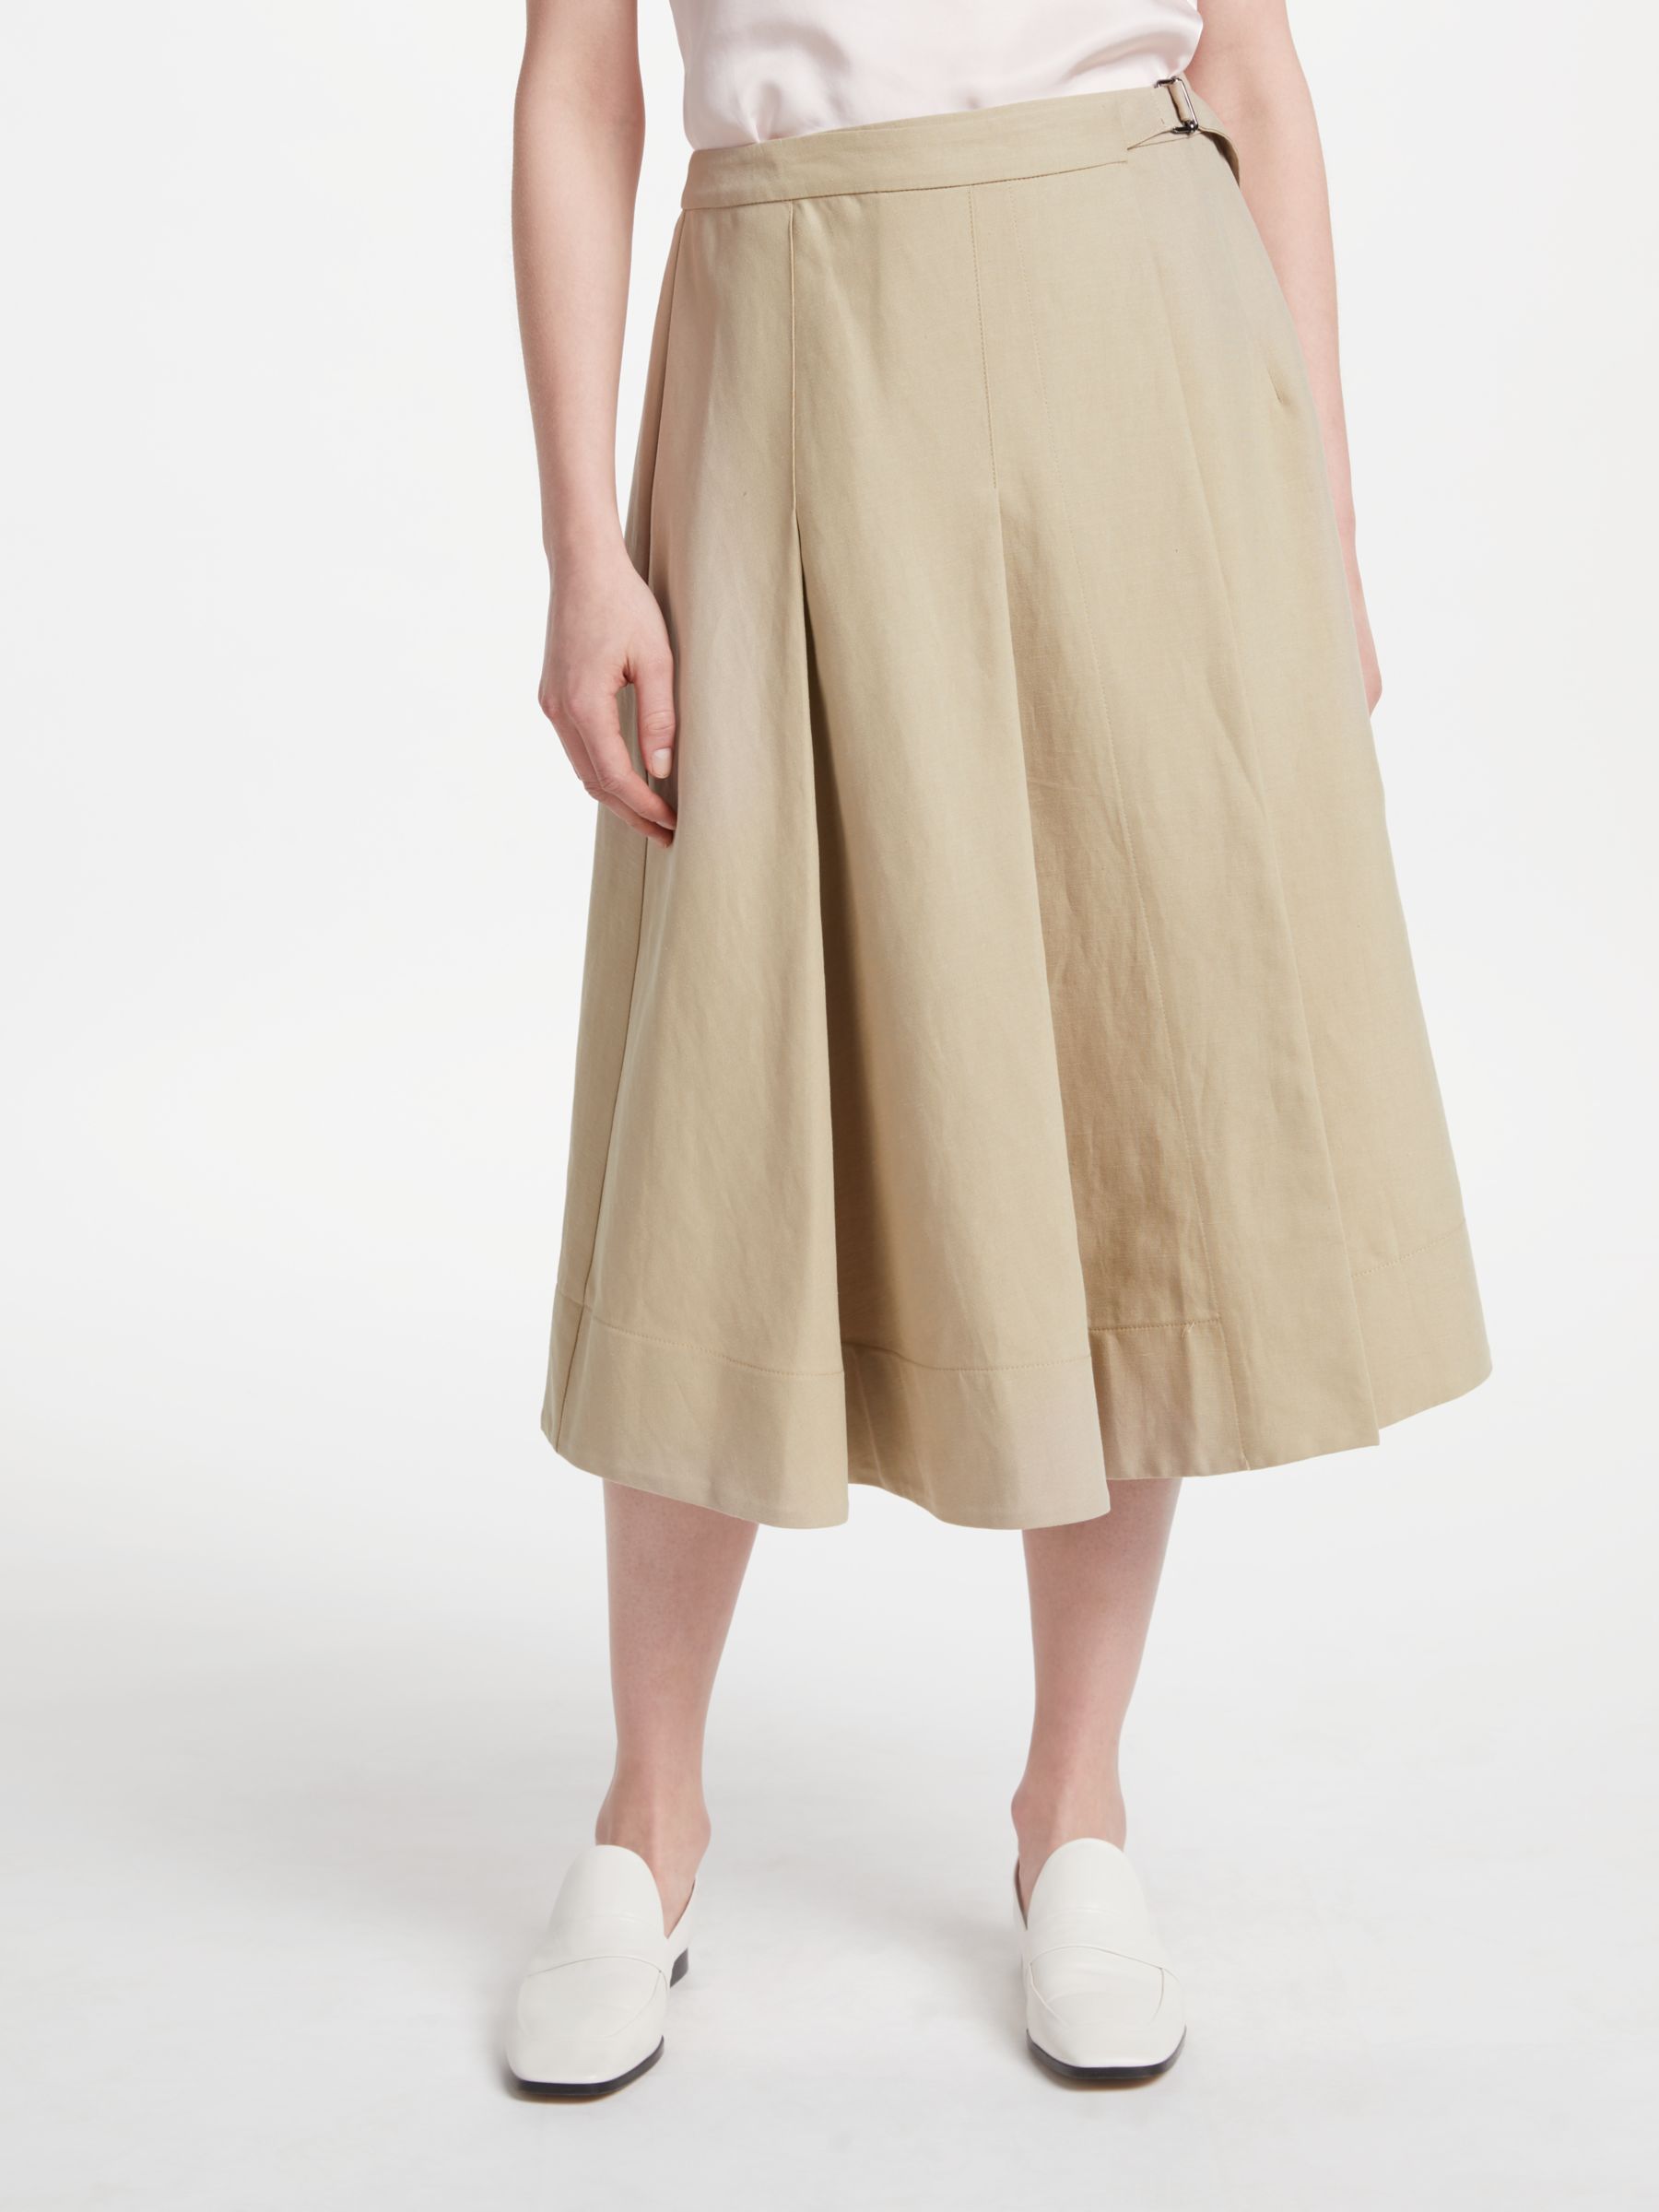 Finery Ocean Linen Wrap Skirt, Beige Stone